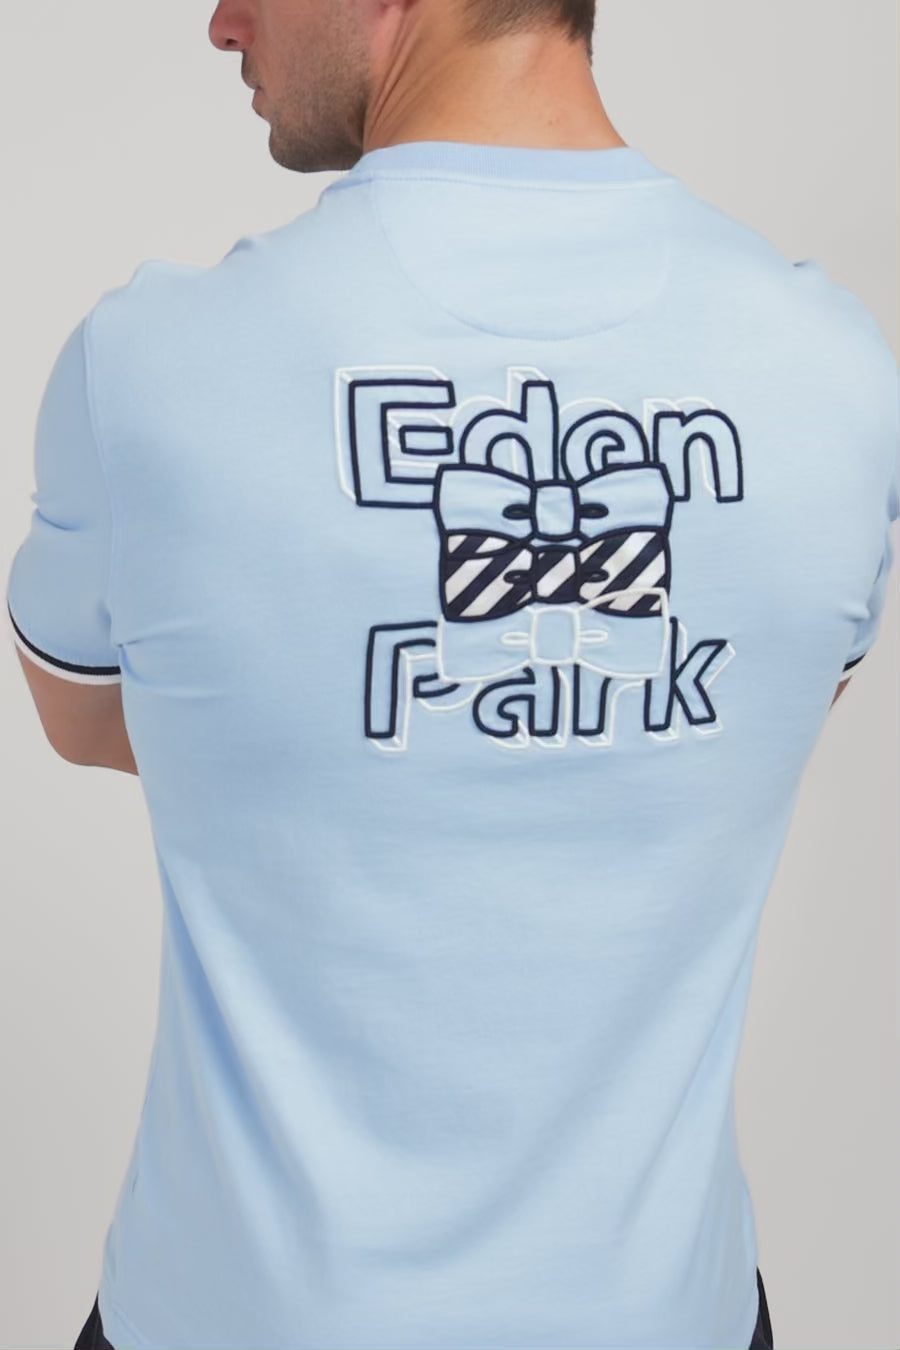 T-shirt bleu brodé Eden Park